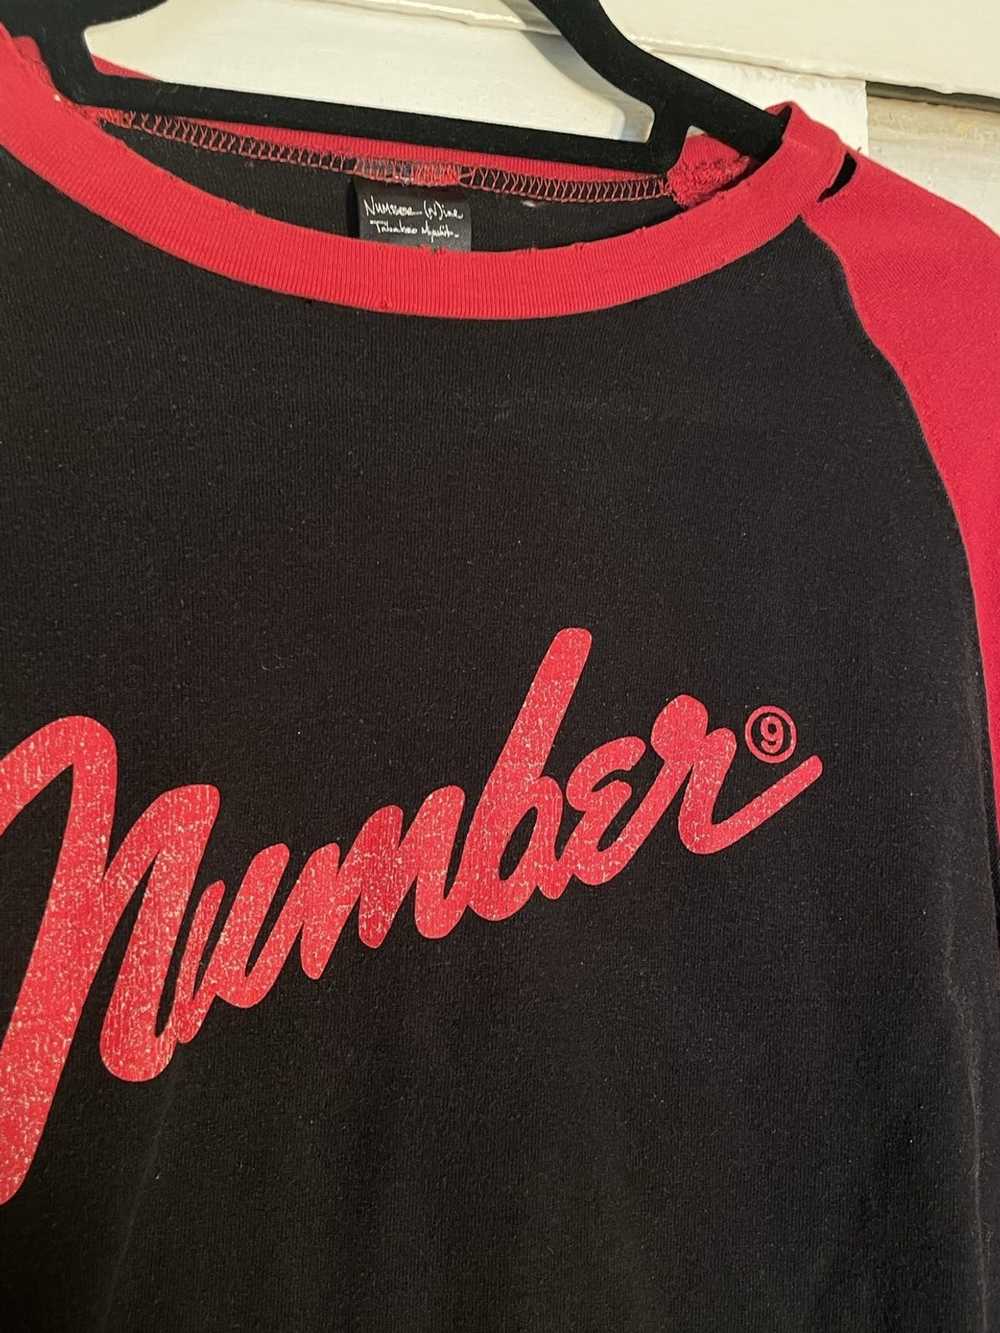 Number (N)ine Number (N)ine fender logo shirt 05 … - image 6